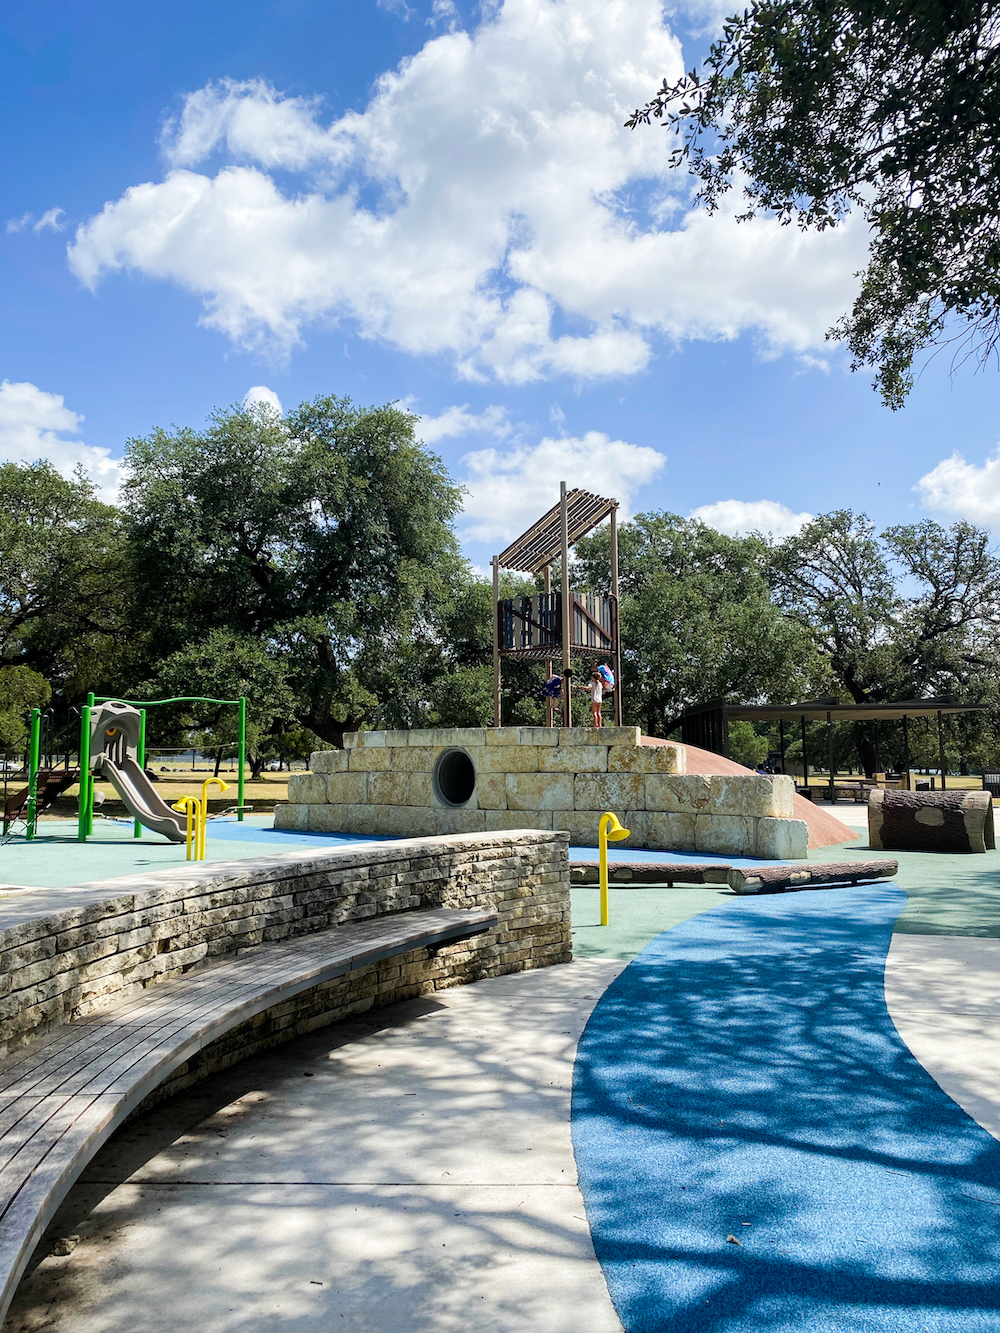 Top 5 Outdoor Activities in Georgetown, TX